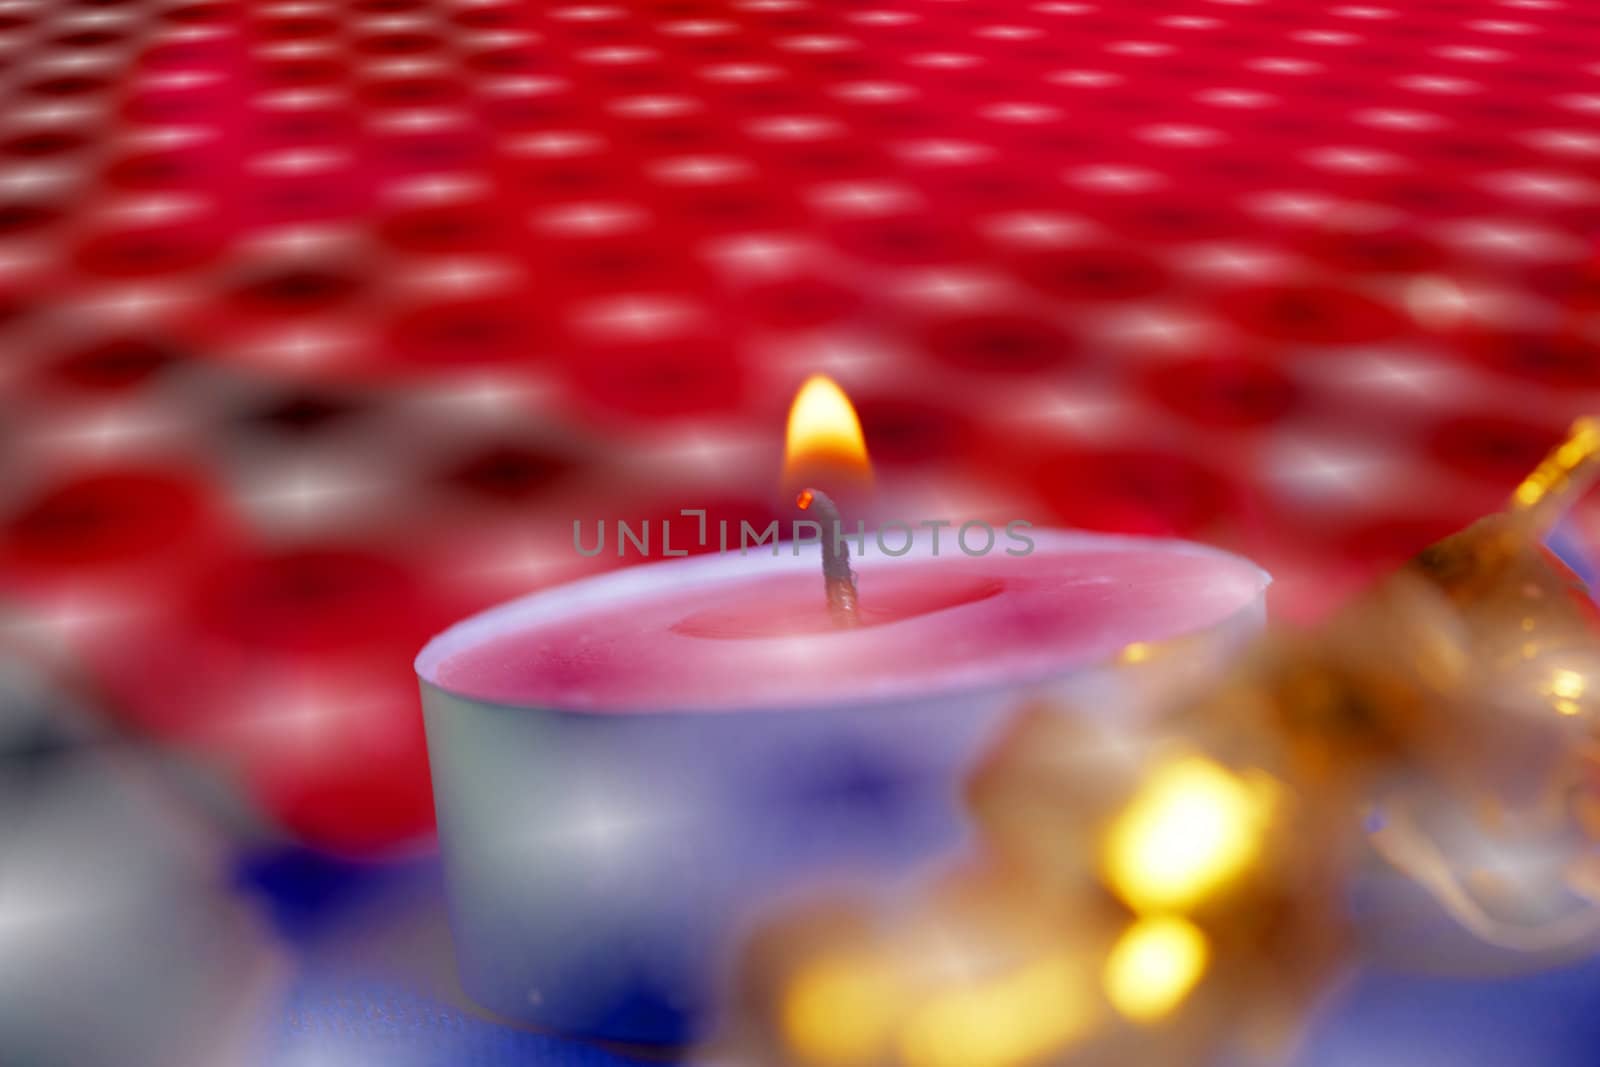 Burning candle by petrkurgan